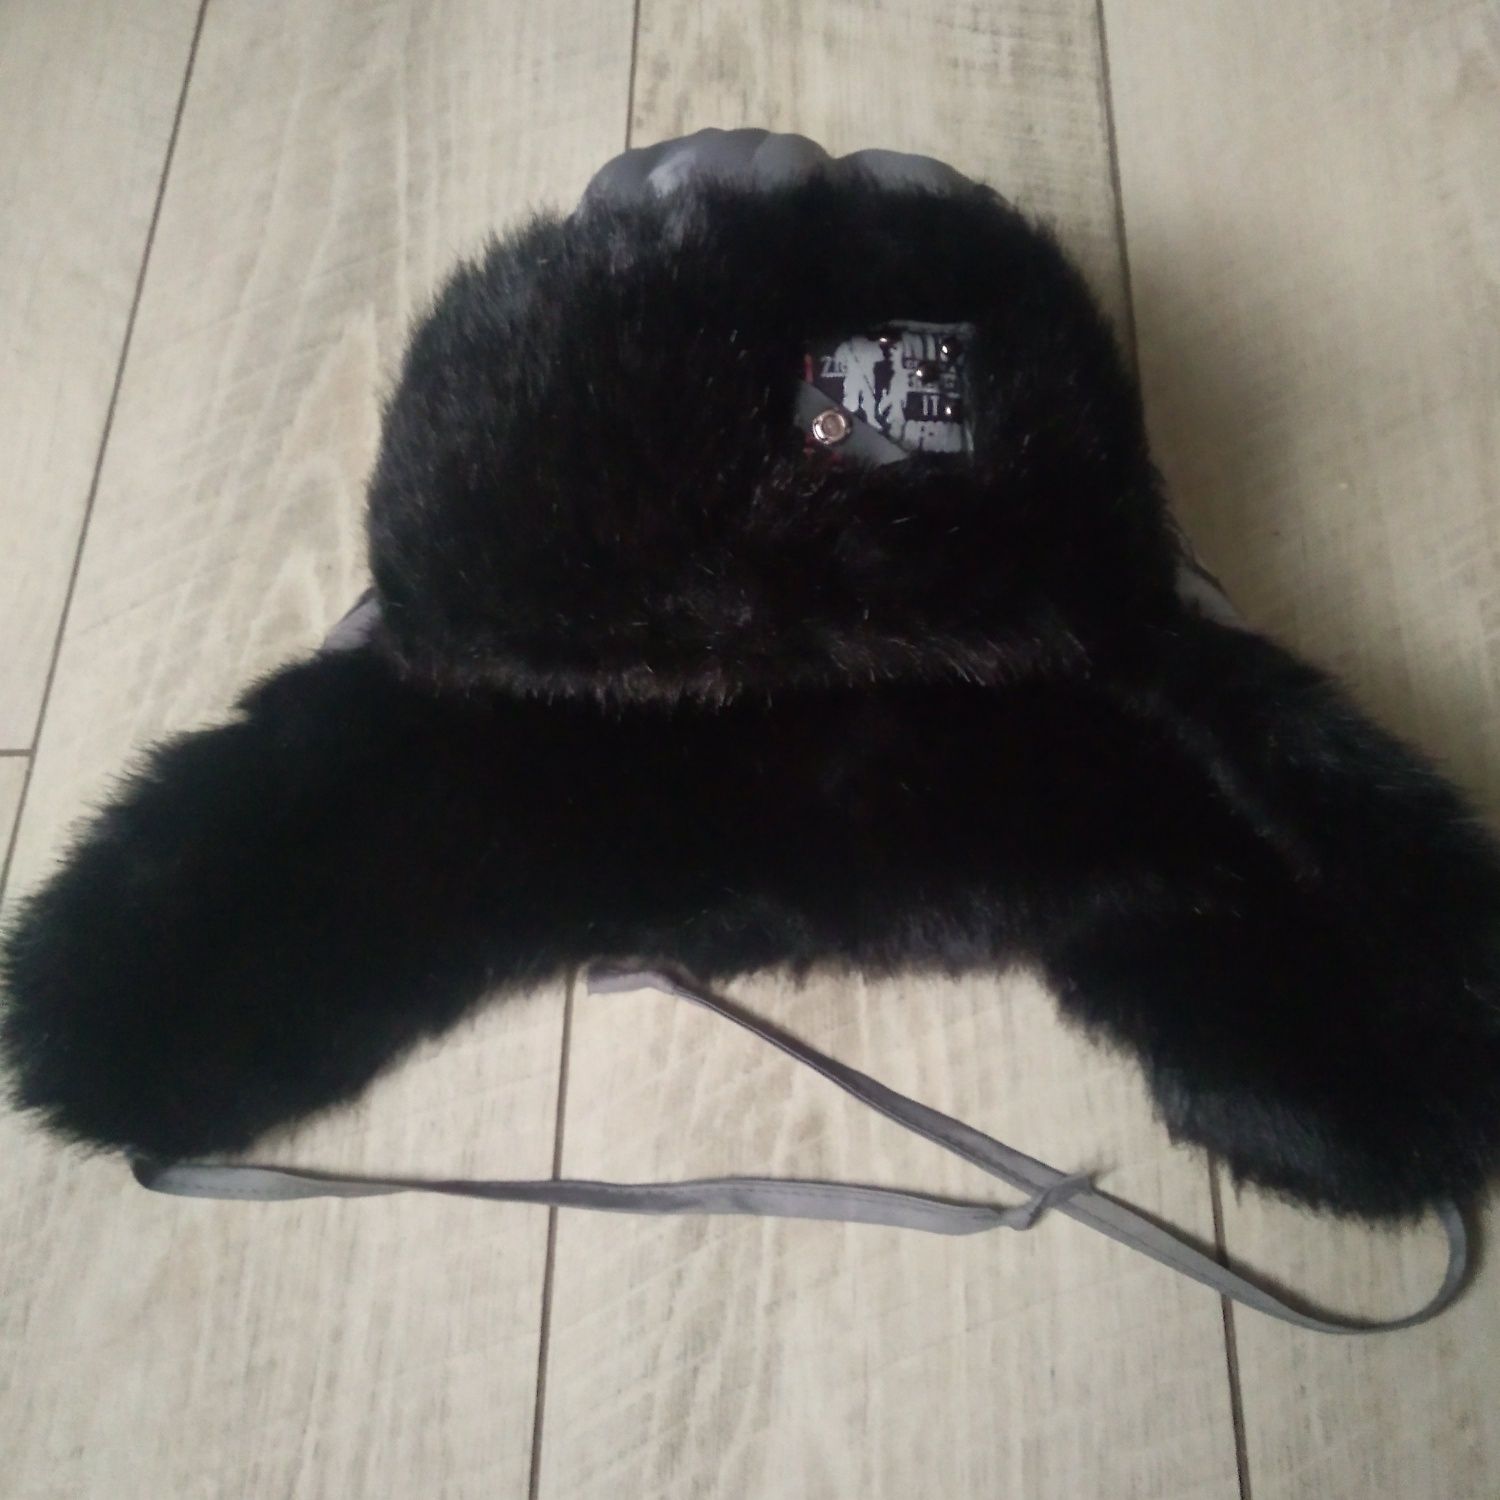 Теплая зимняя шапка с ушками и завязками для мальчика